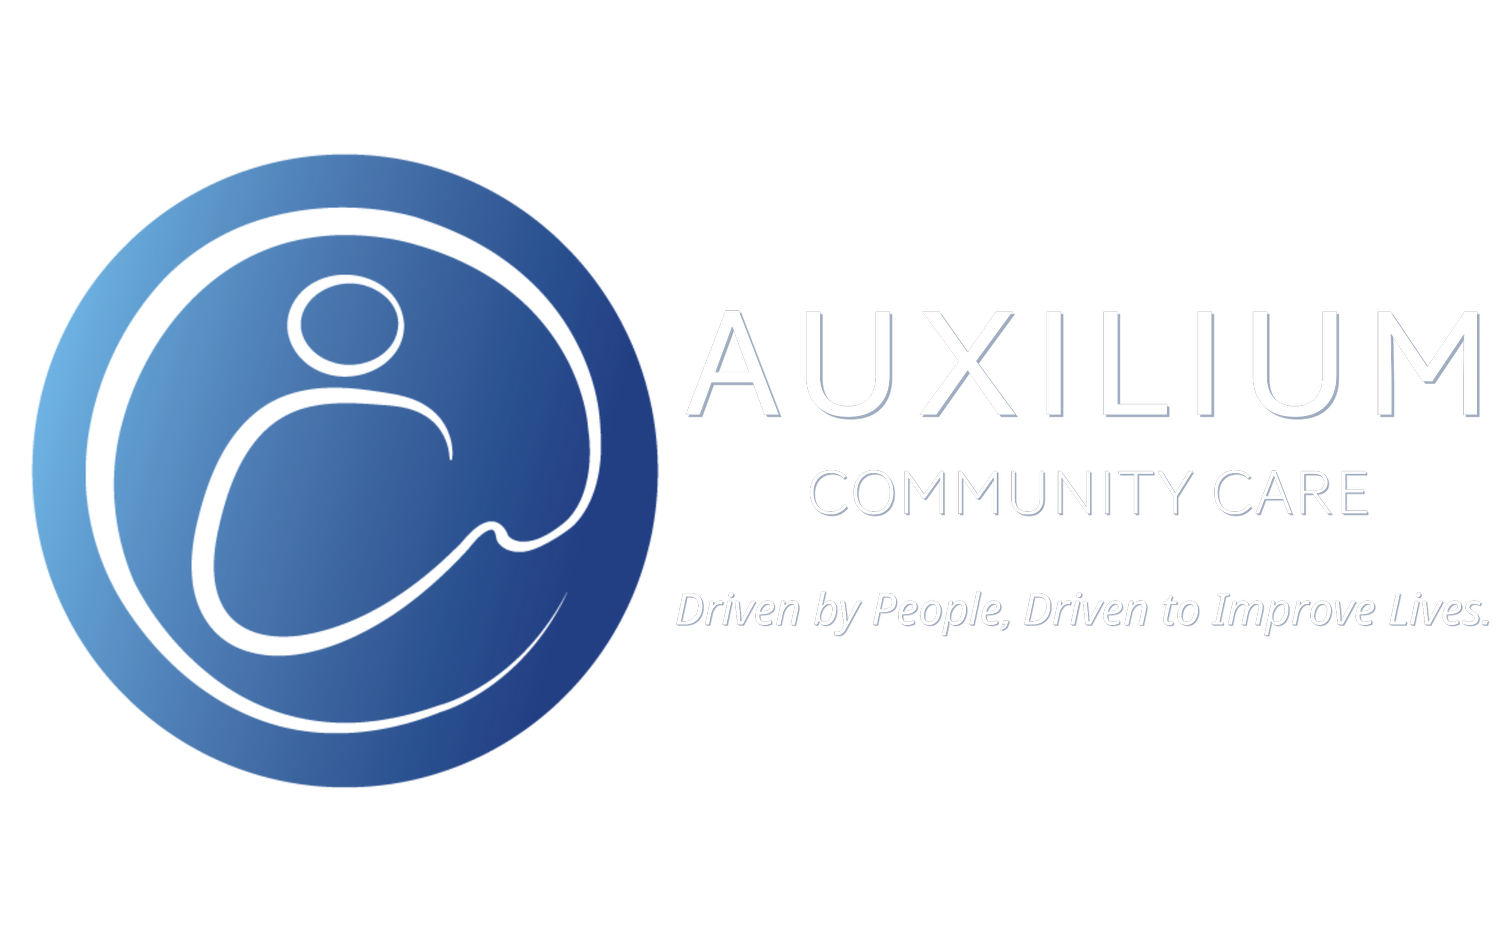 Auxilium Community Care